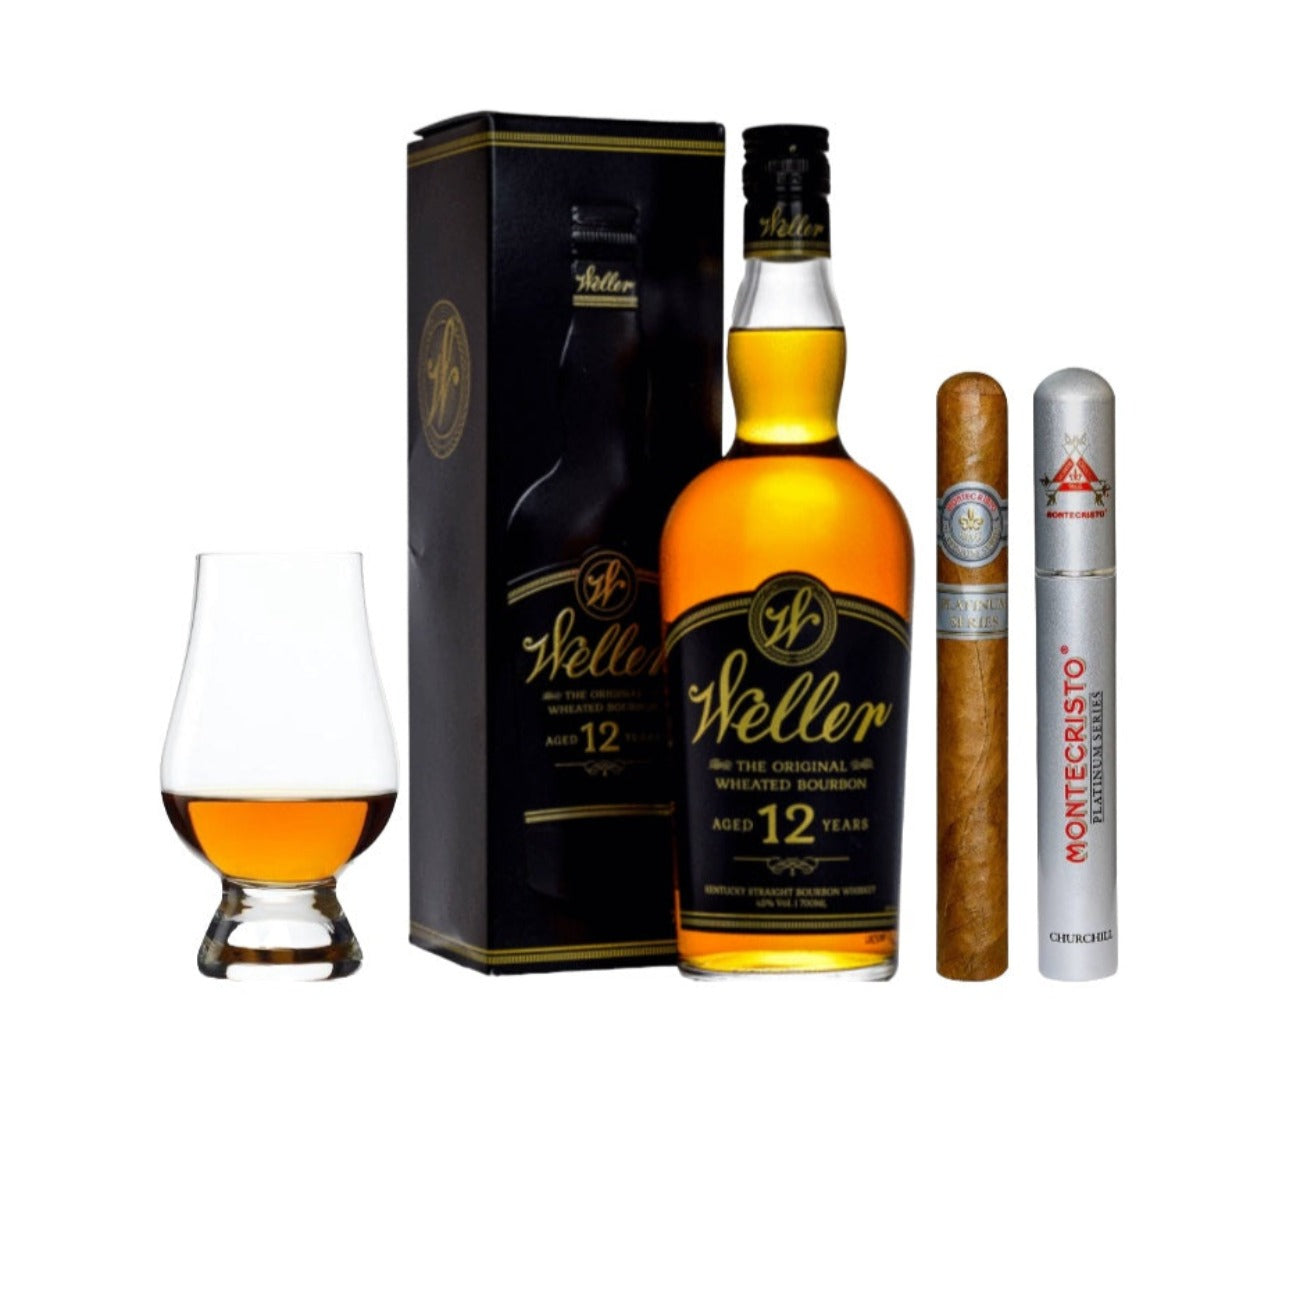 Weller 12 Year Bourbon Cigar Glencarin Gift set